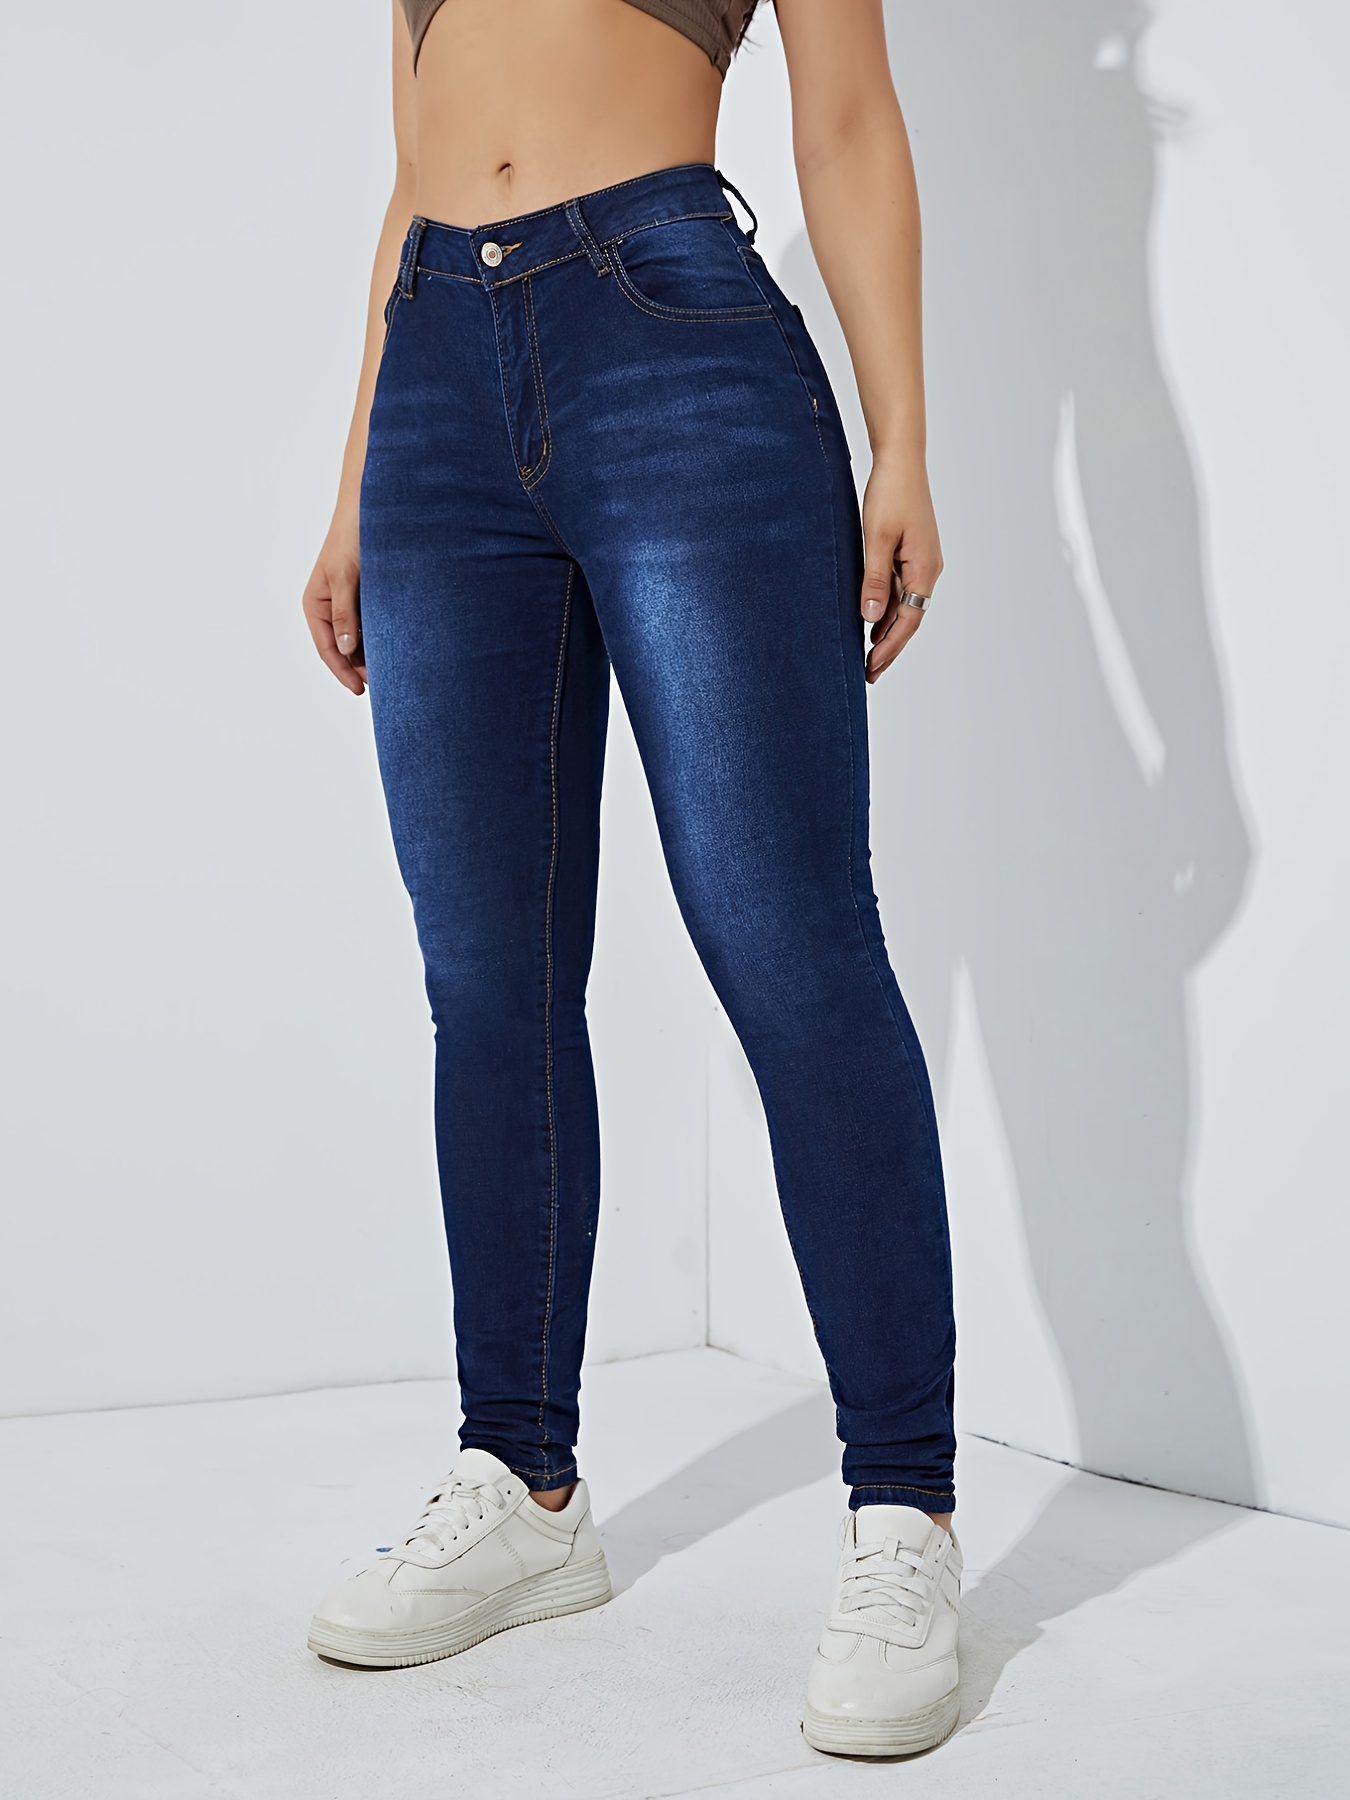 Jeans super skinny * escuro com design simples de cintura alta, calça jeans  de cintura alta com ondulação em relevo na virilha, jeans feminino, roupas